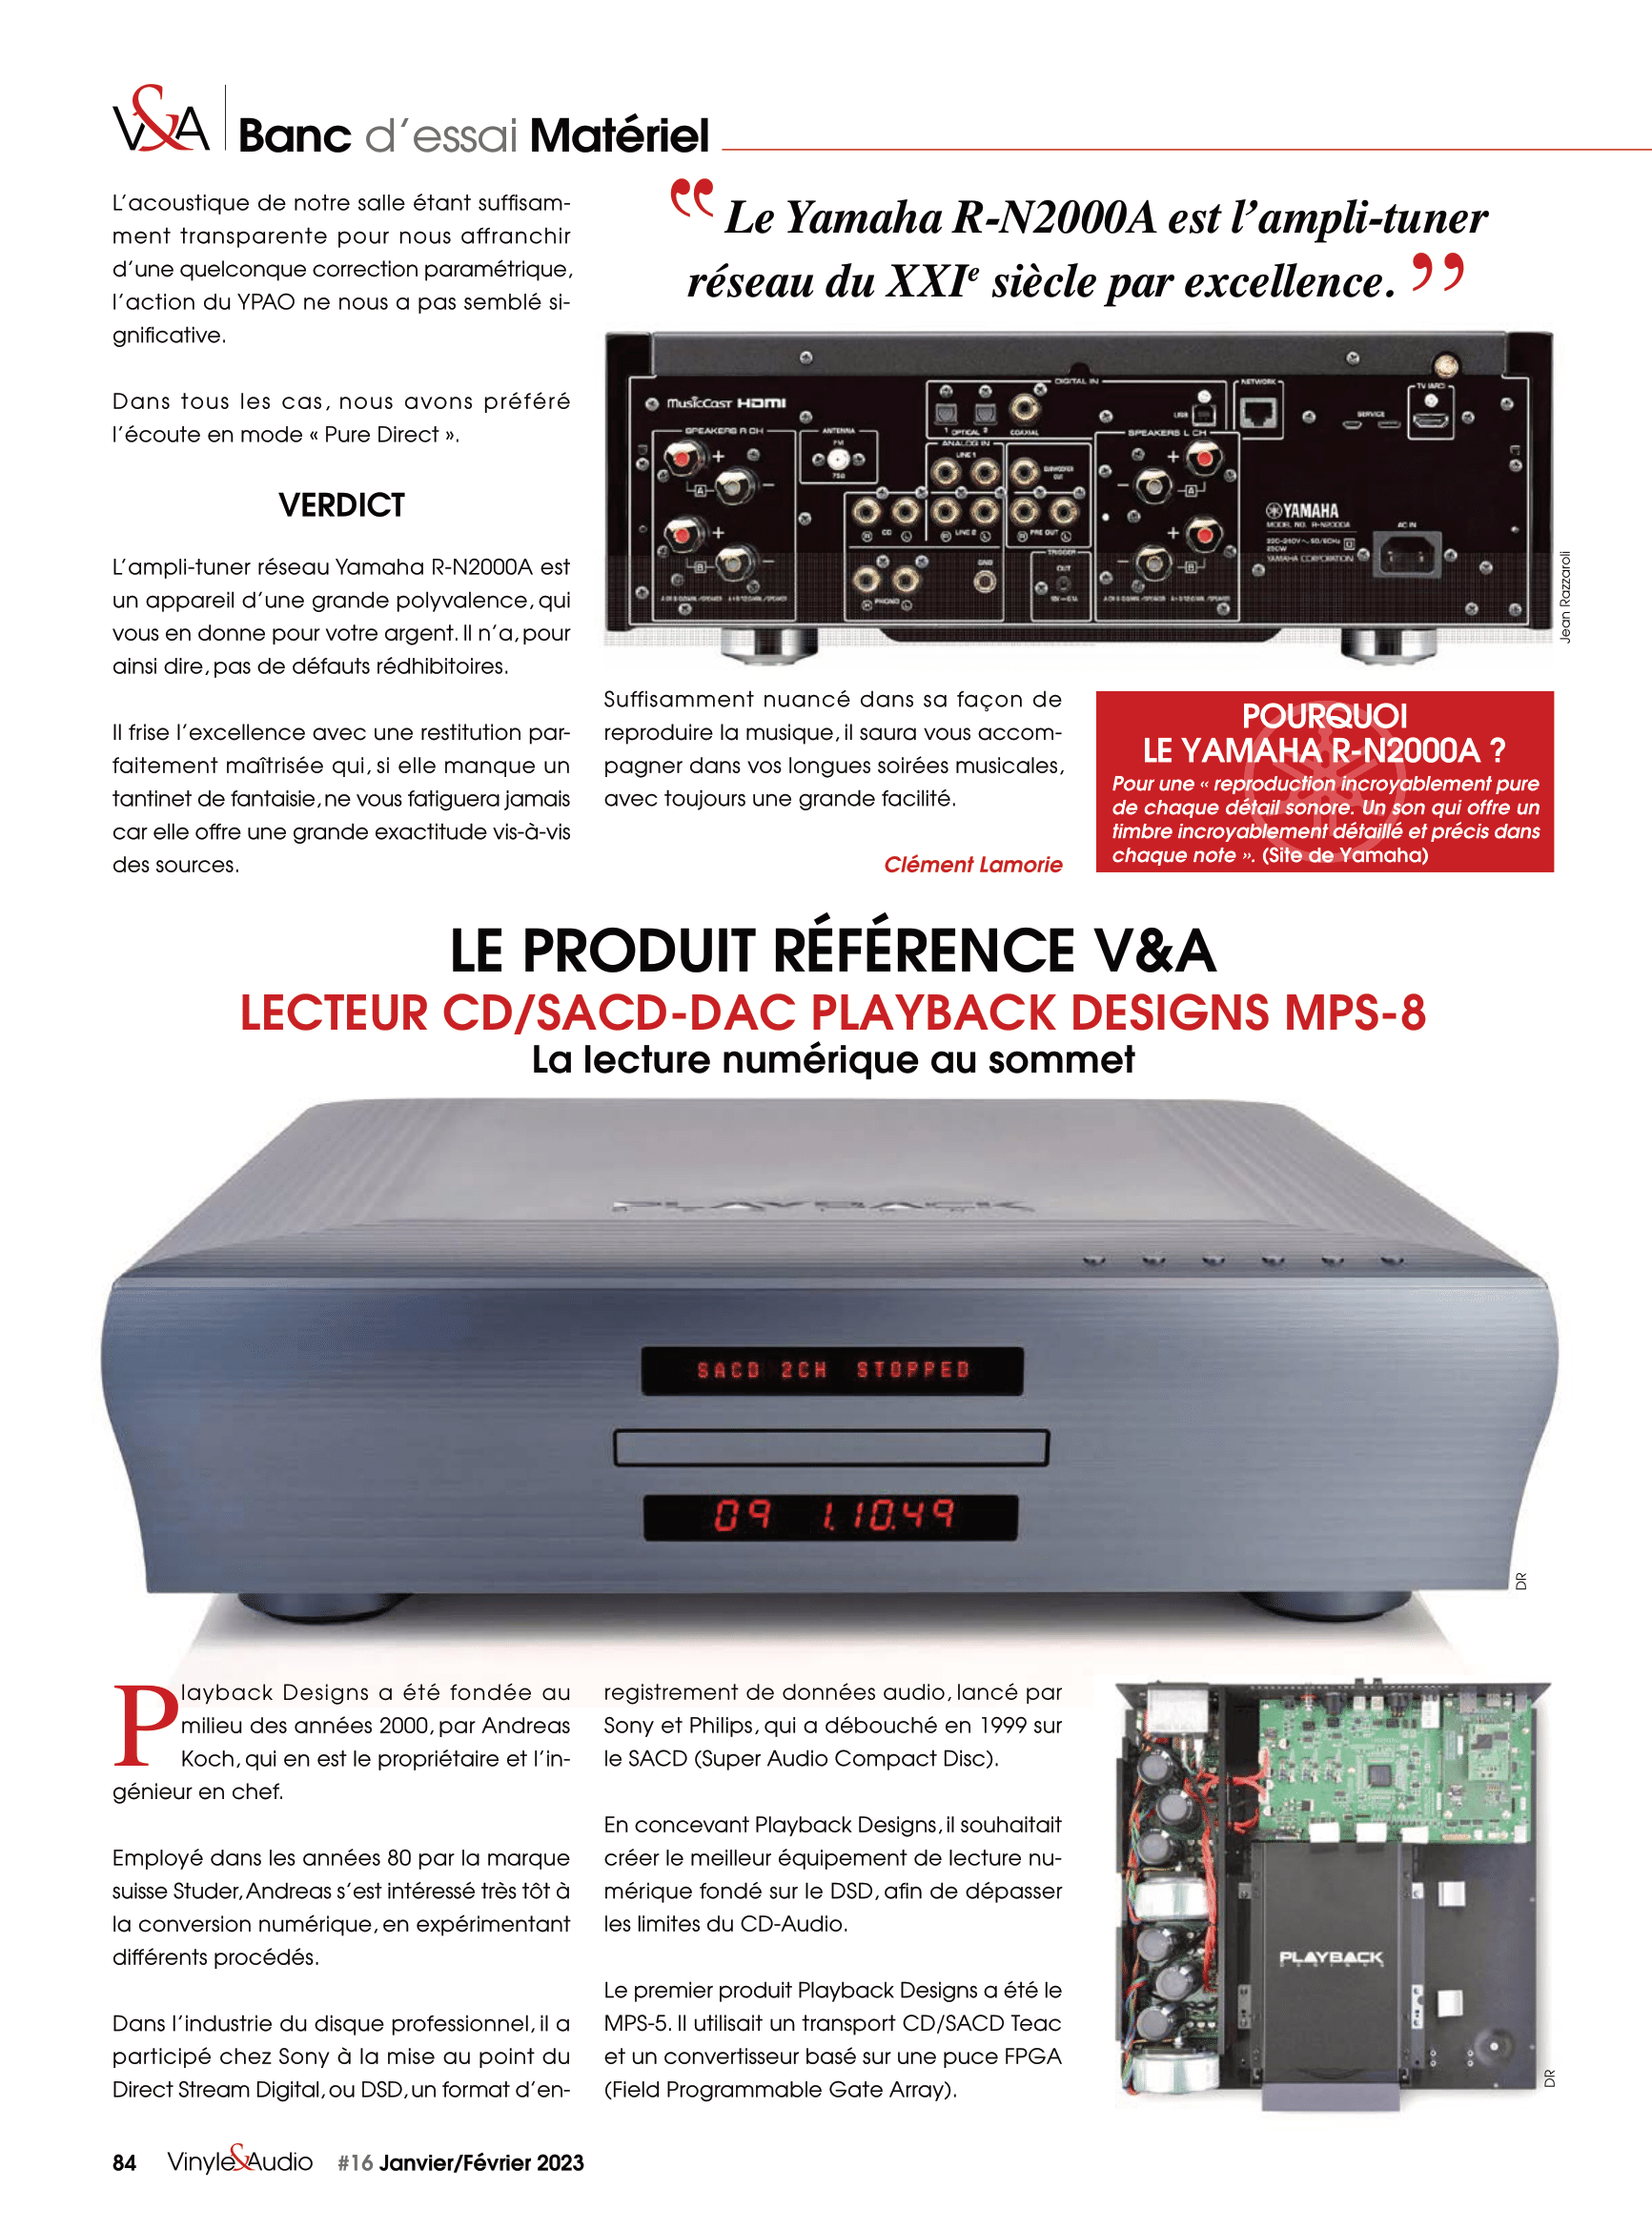 Vinyle & Audio n°16 : banc d’essai matériel et nouveautés avec le lecteur CD / SACD - DAC Playback Designs MPS-8